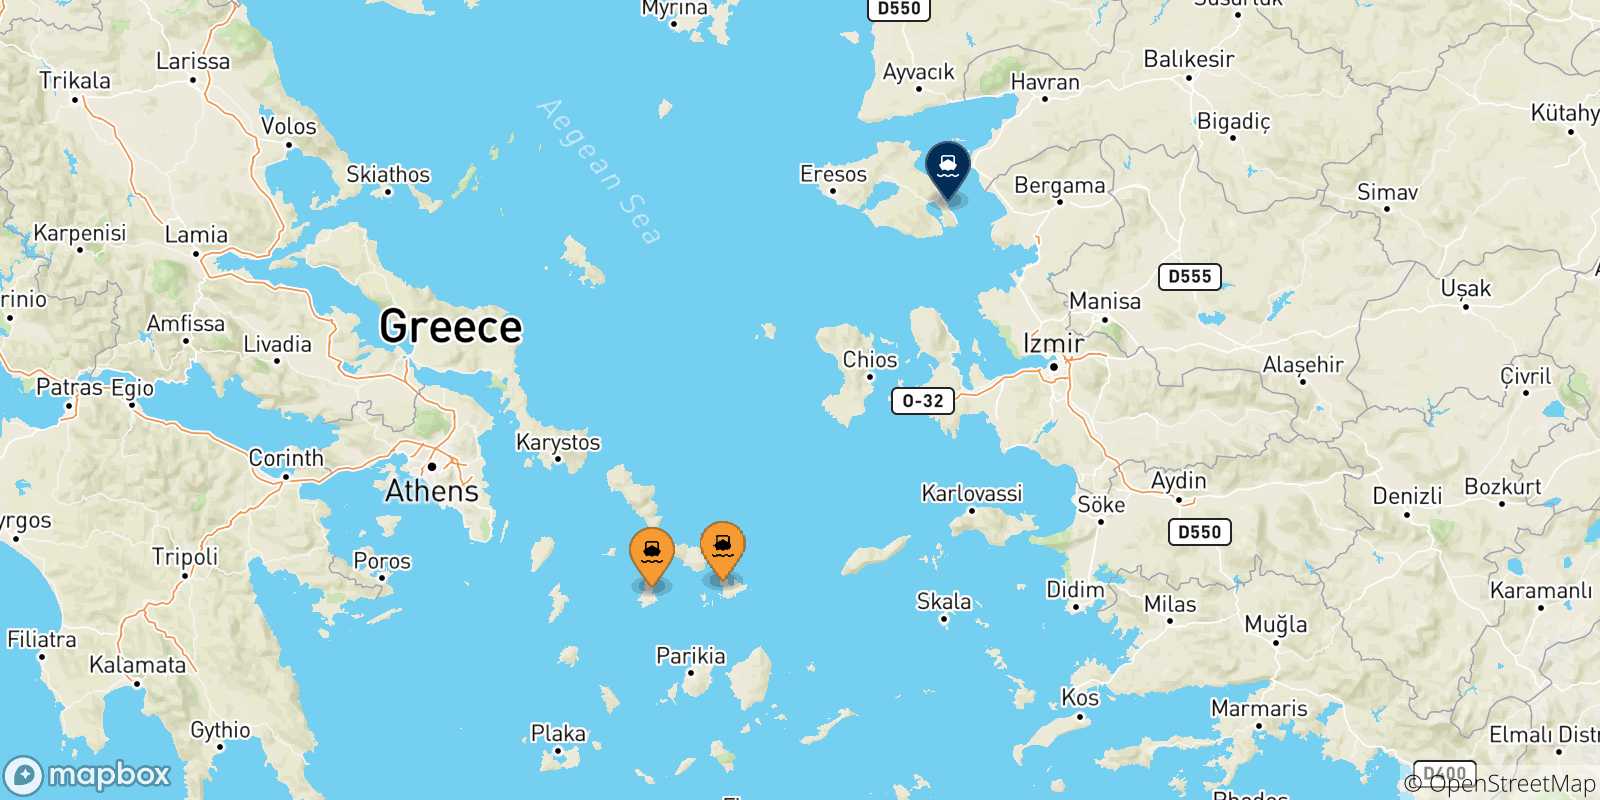 Mapa de las posibles rutas entre Las Cicladas y  Mytilene (Lesvos)